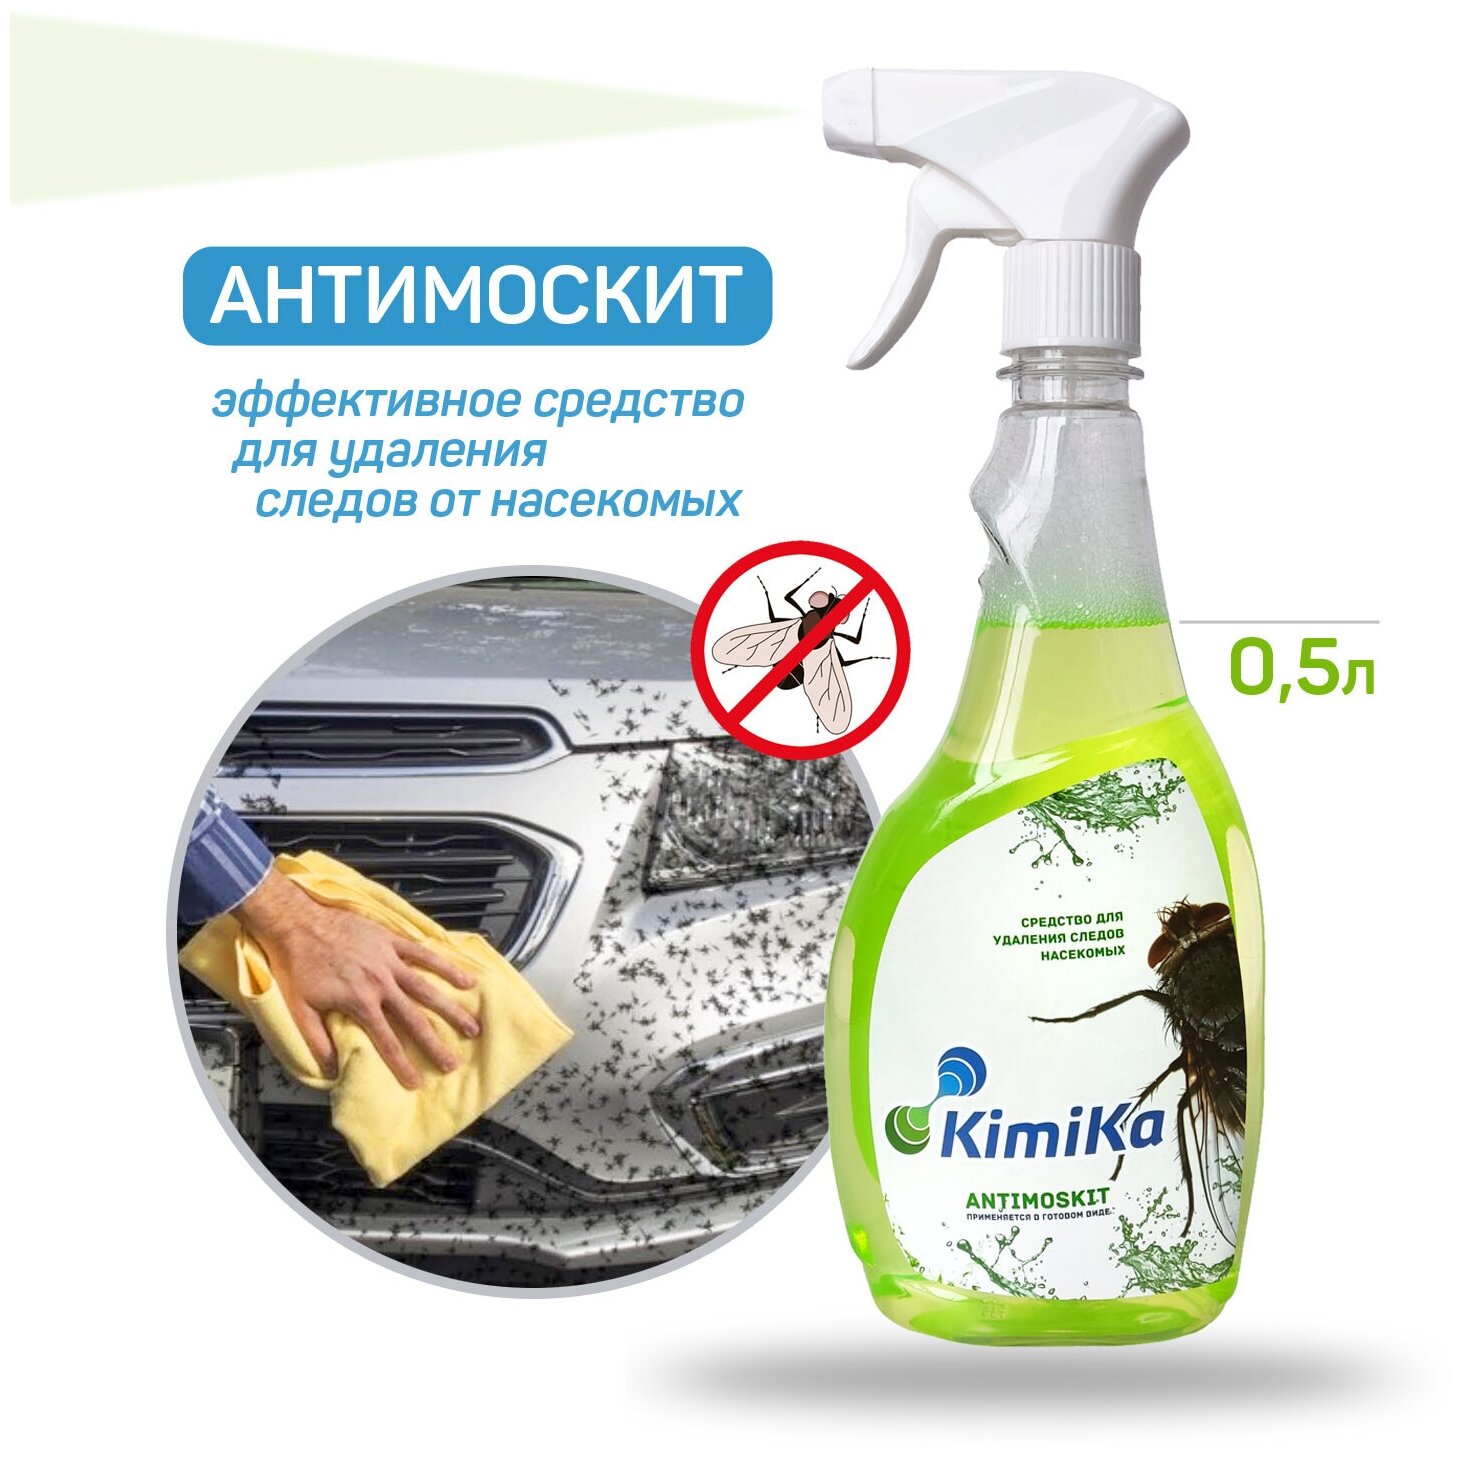 Очиститель следов насекомых KimiKa ANTIMOSKIT концентрат 500 мл / Средство для удаления следов насекомых / Очиститель кузова авто / Автохимия